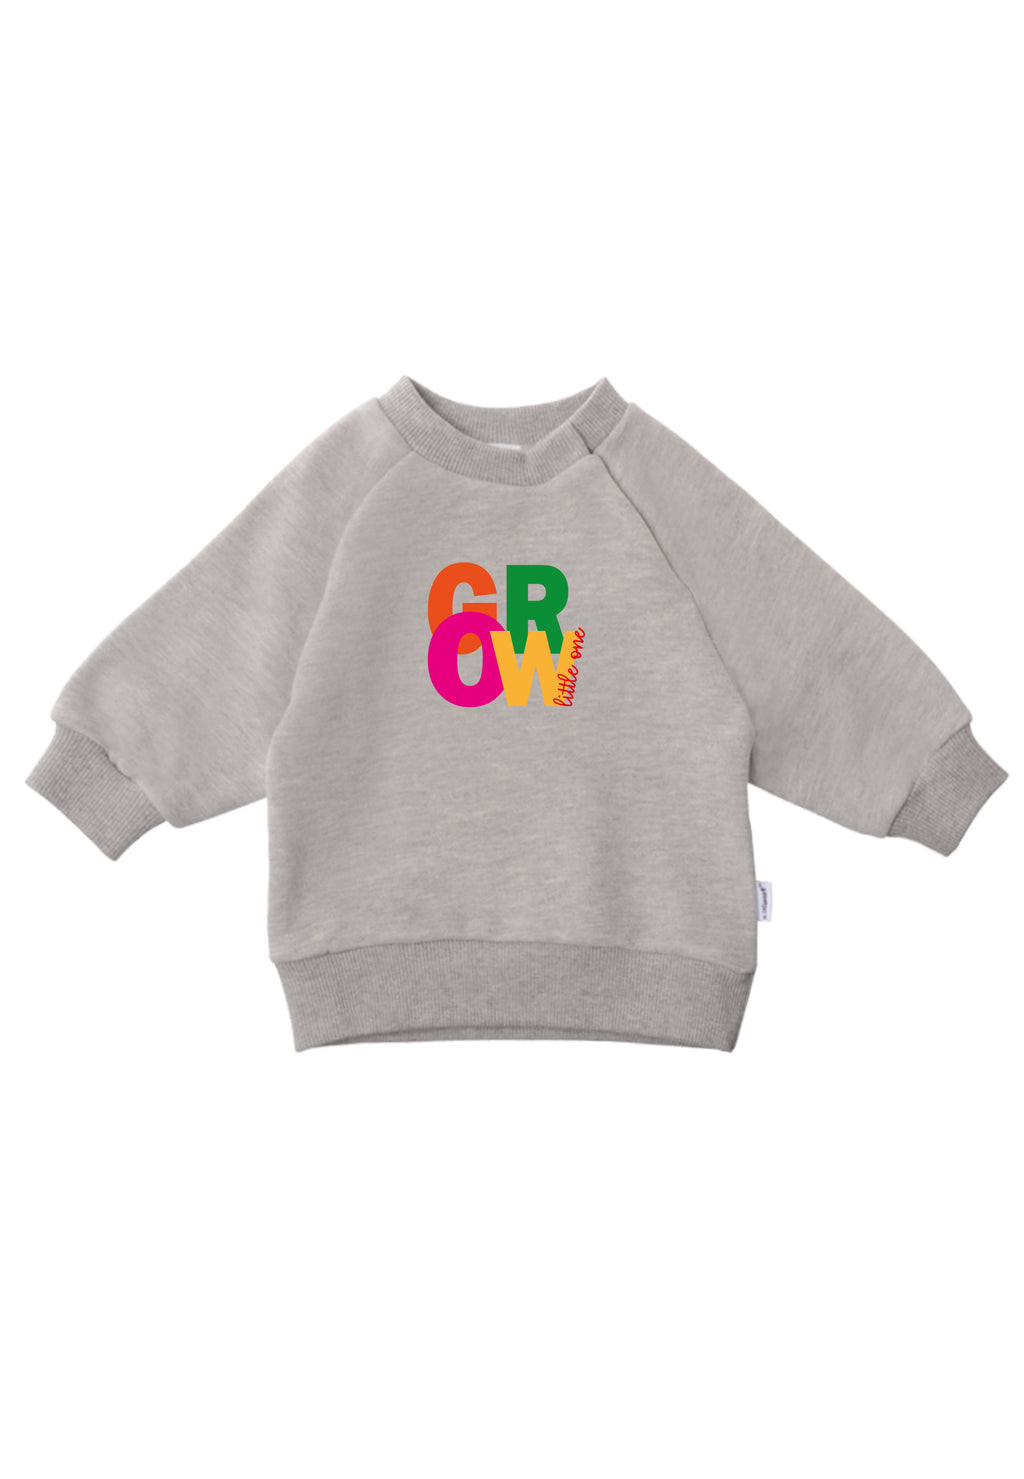 Graues Sweatshirt mit buntem Wording Aufdruck "GROW little one"